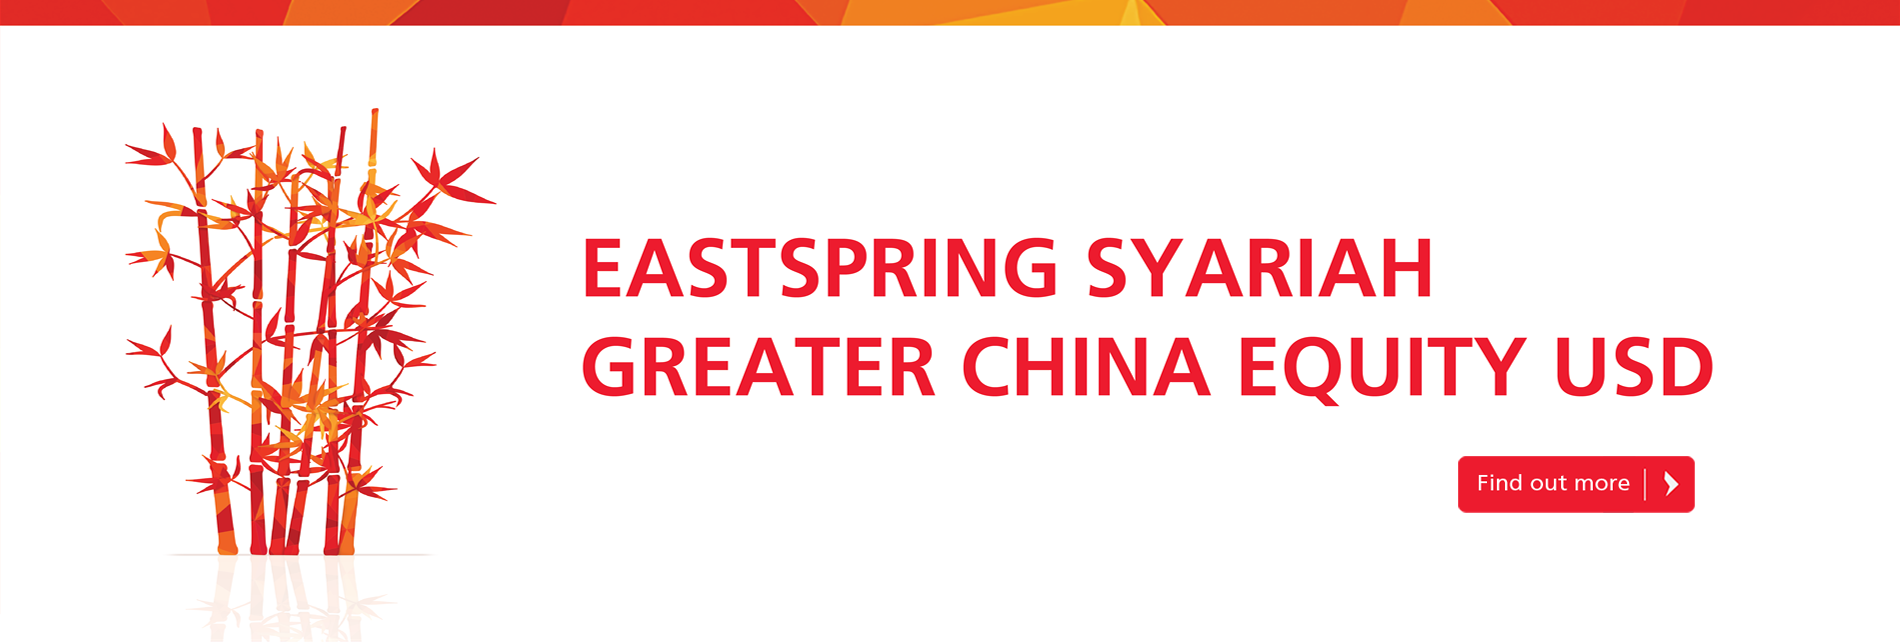 Eastspring Syariah Greater China Equity USD